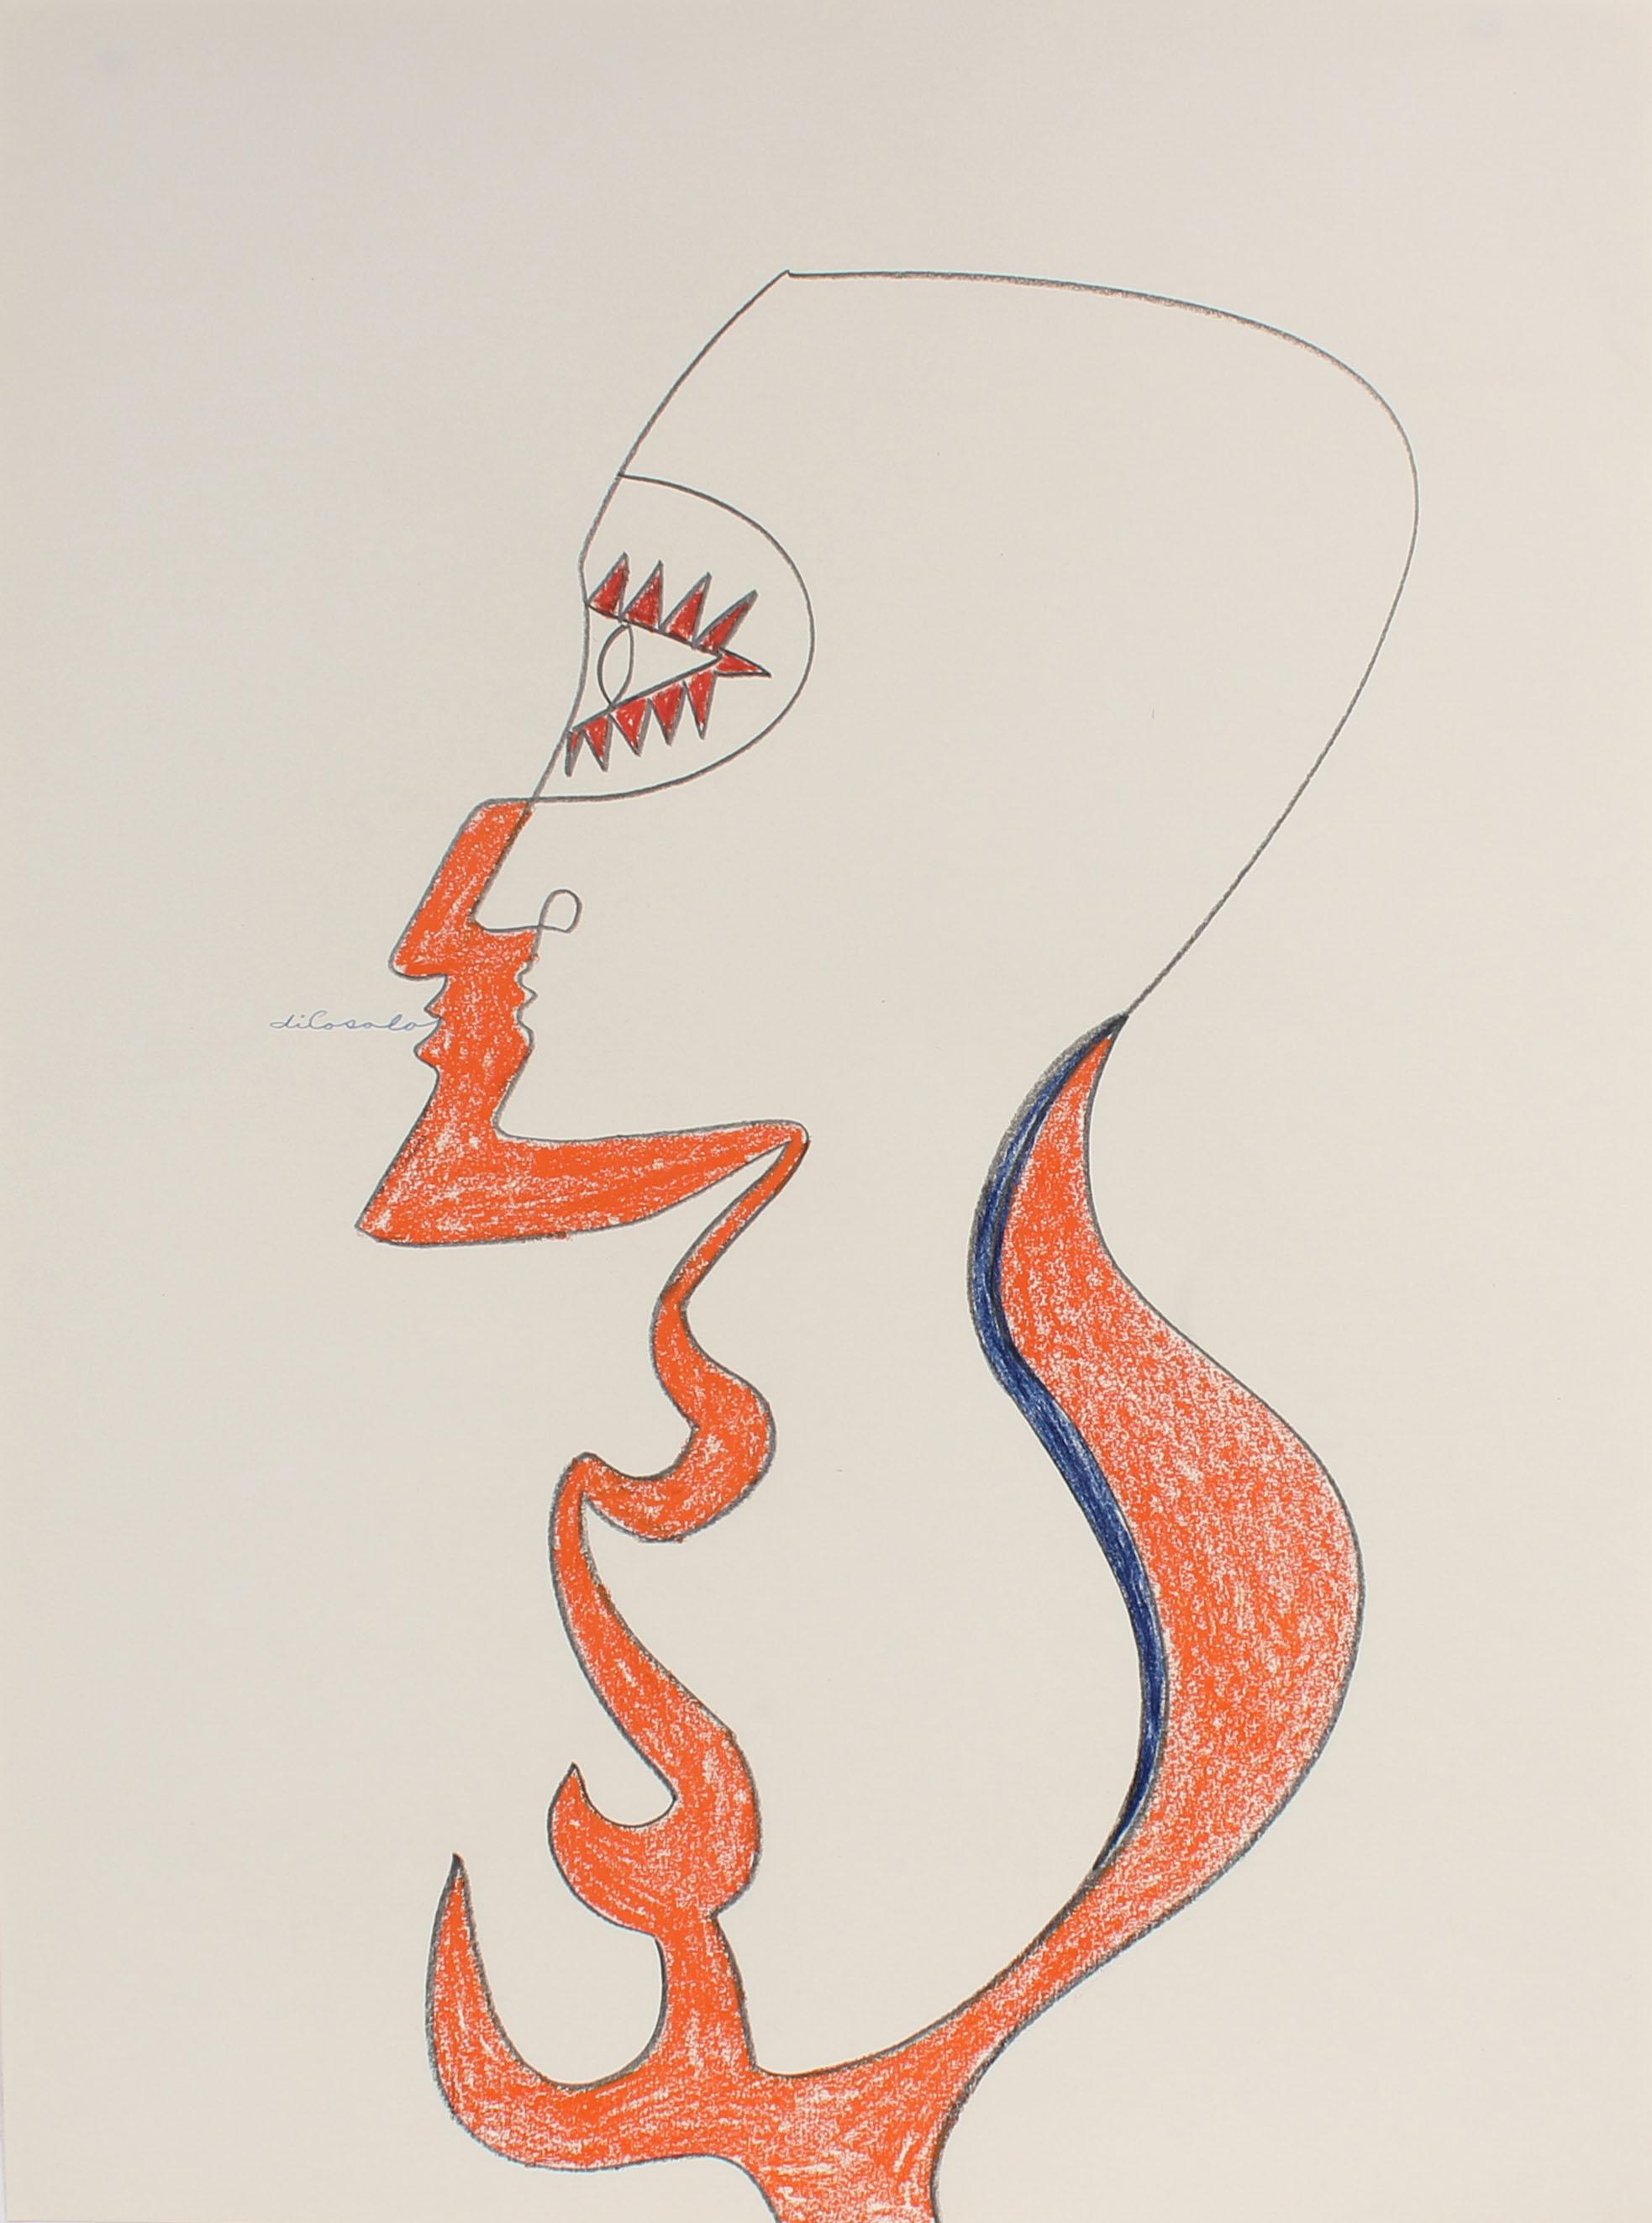 Michael di Cosola Figurative Art - 1970s Psychedelic Portrait in Pastel and Graphite